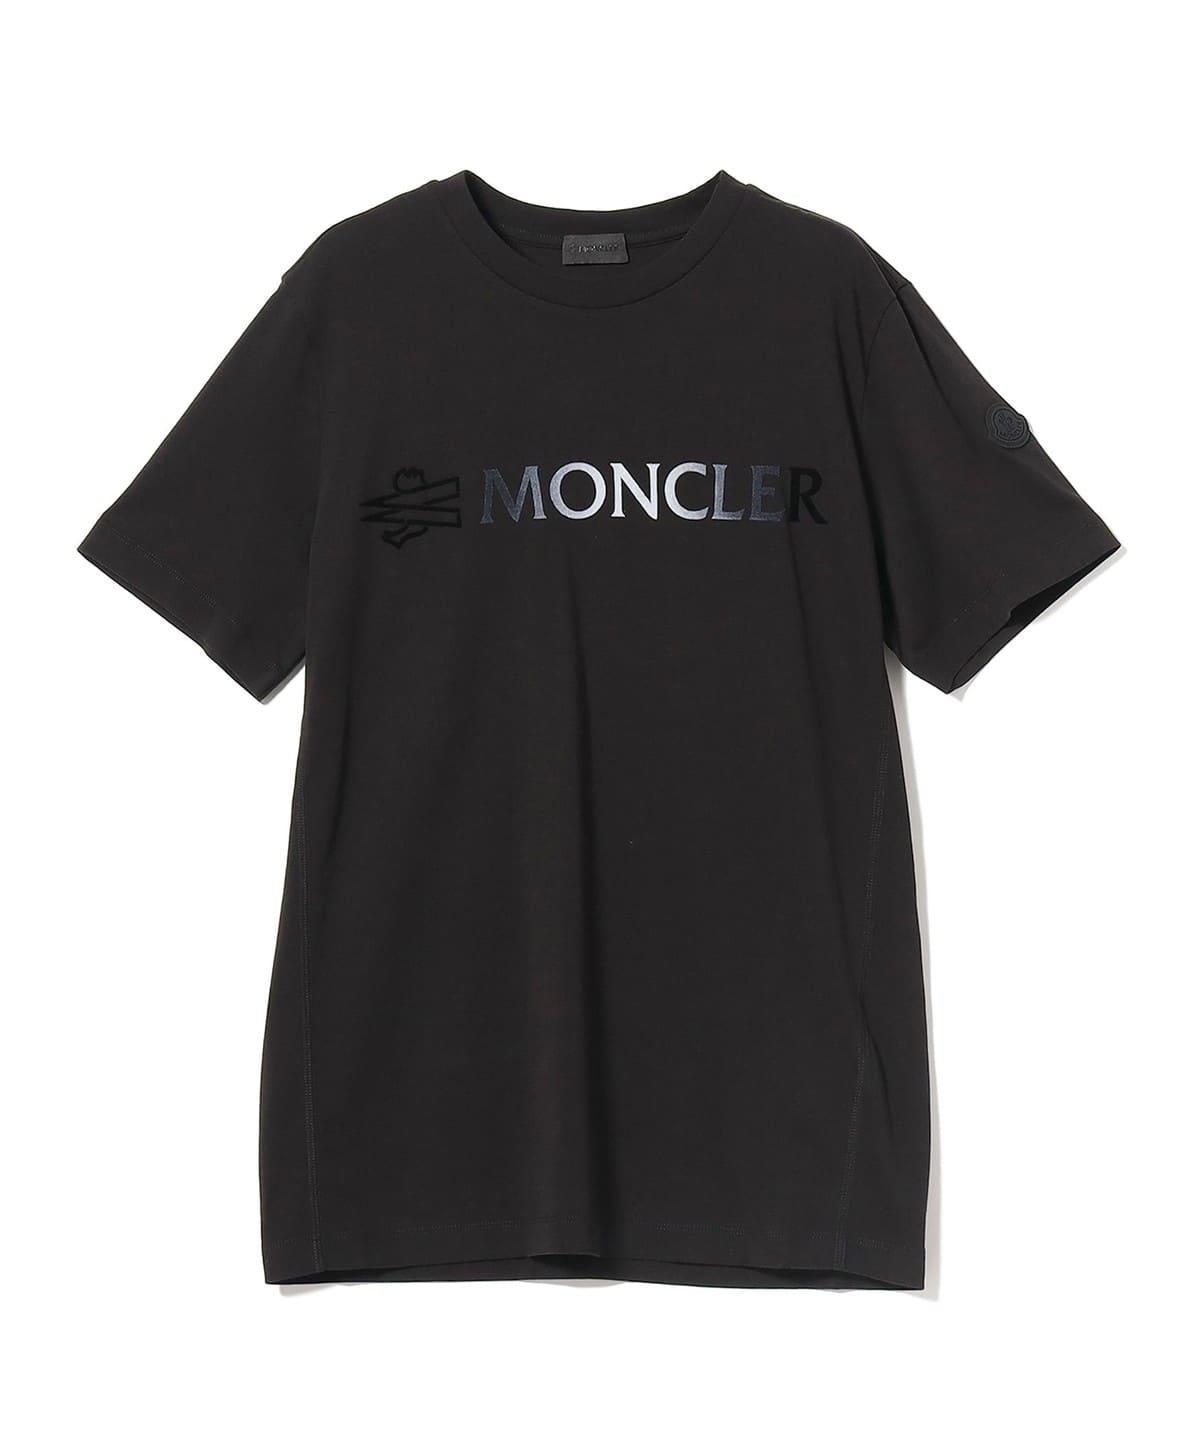 nikeモンクレールロゴパッチ付き Tシャツ XL